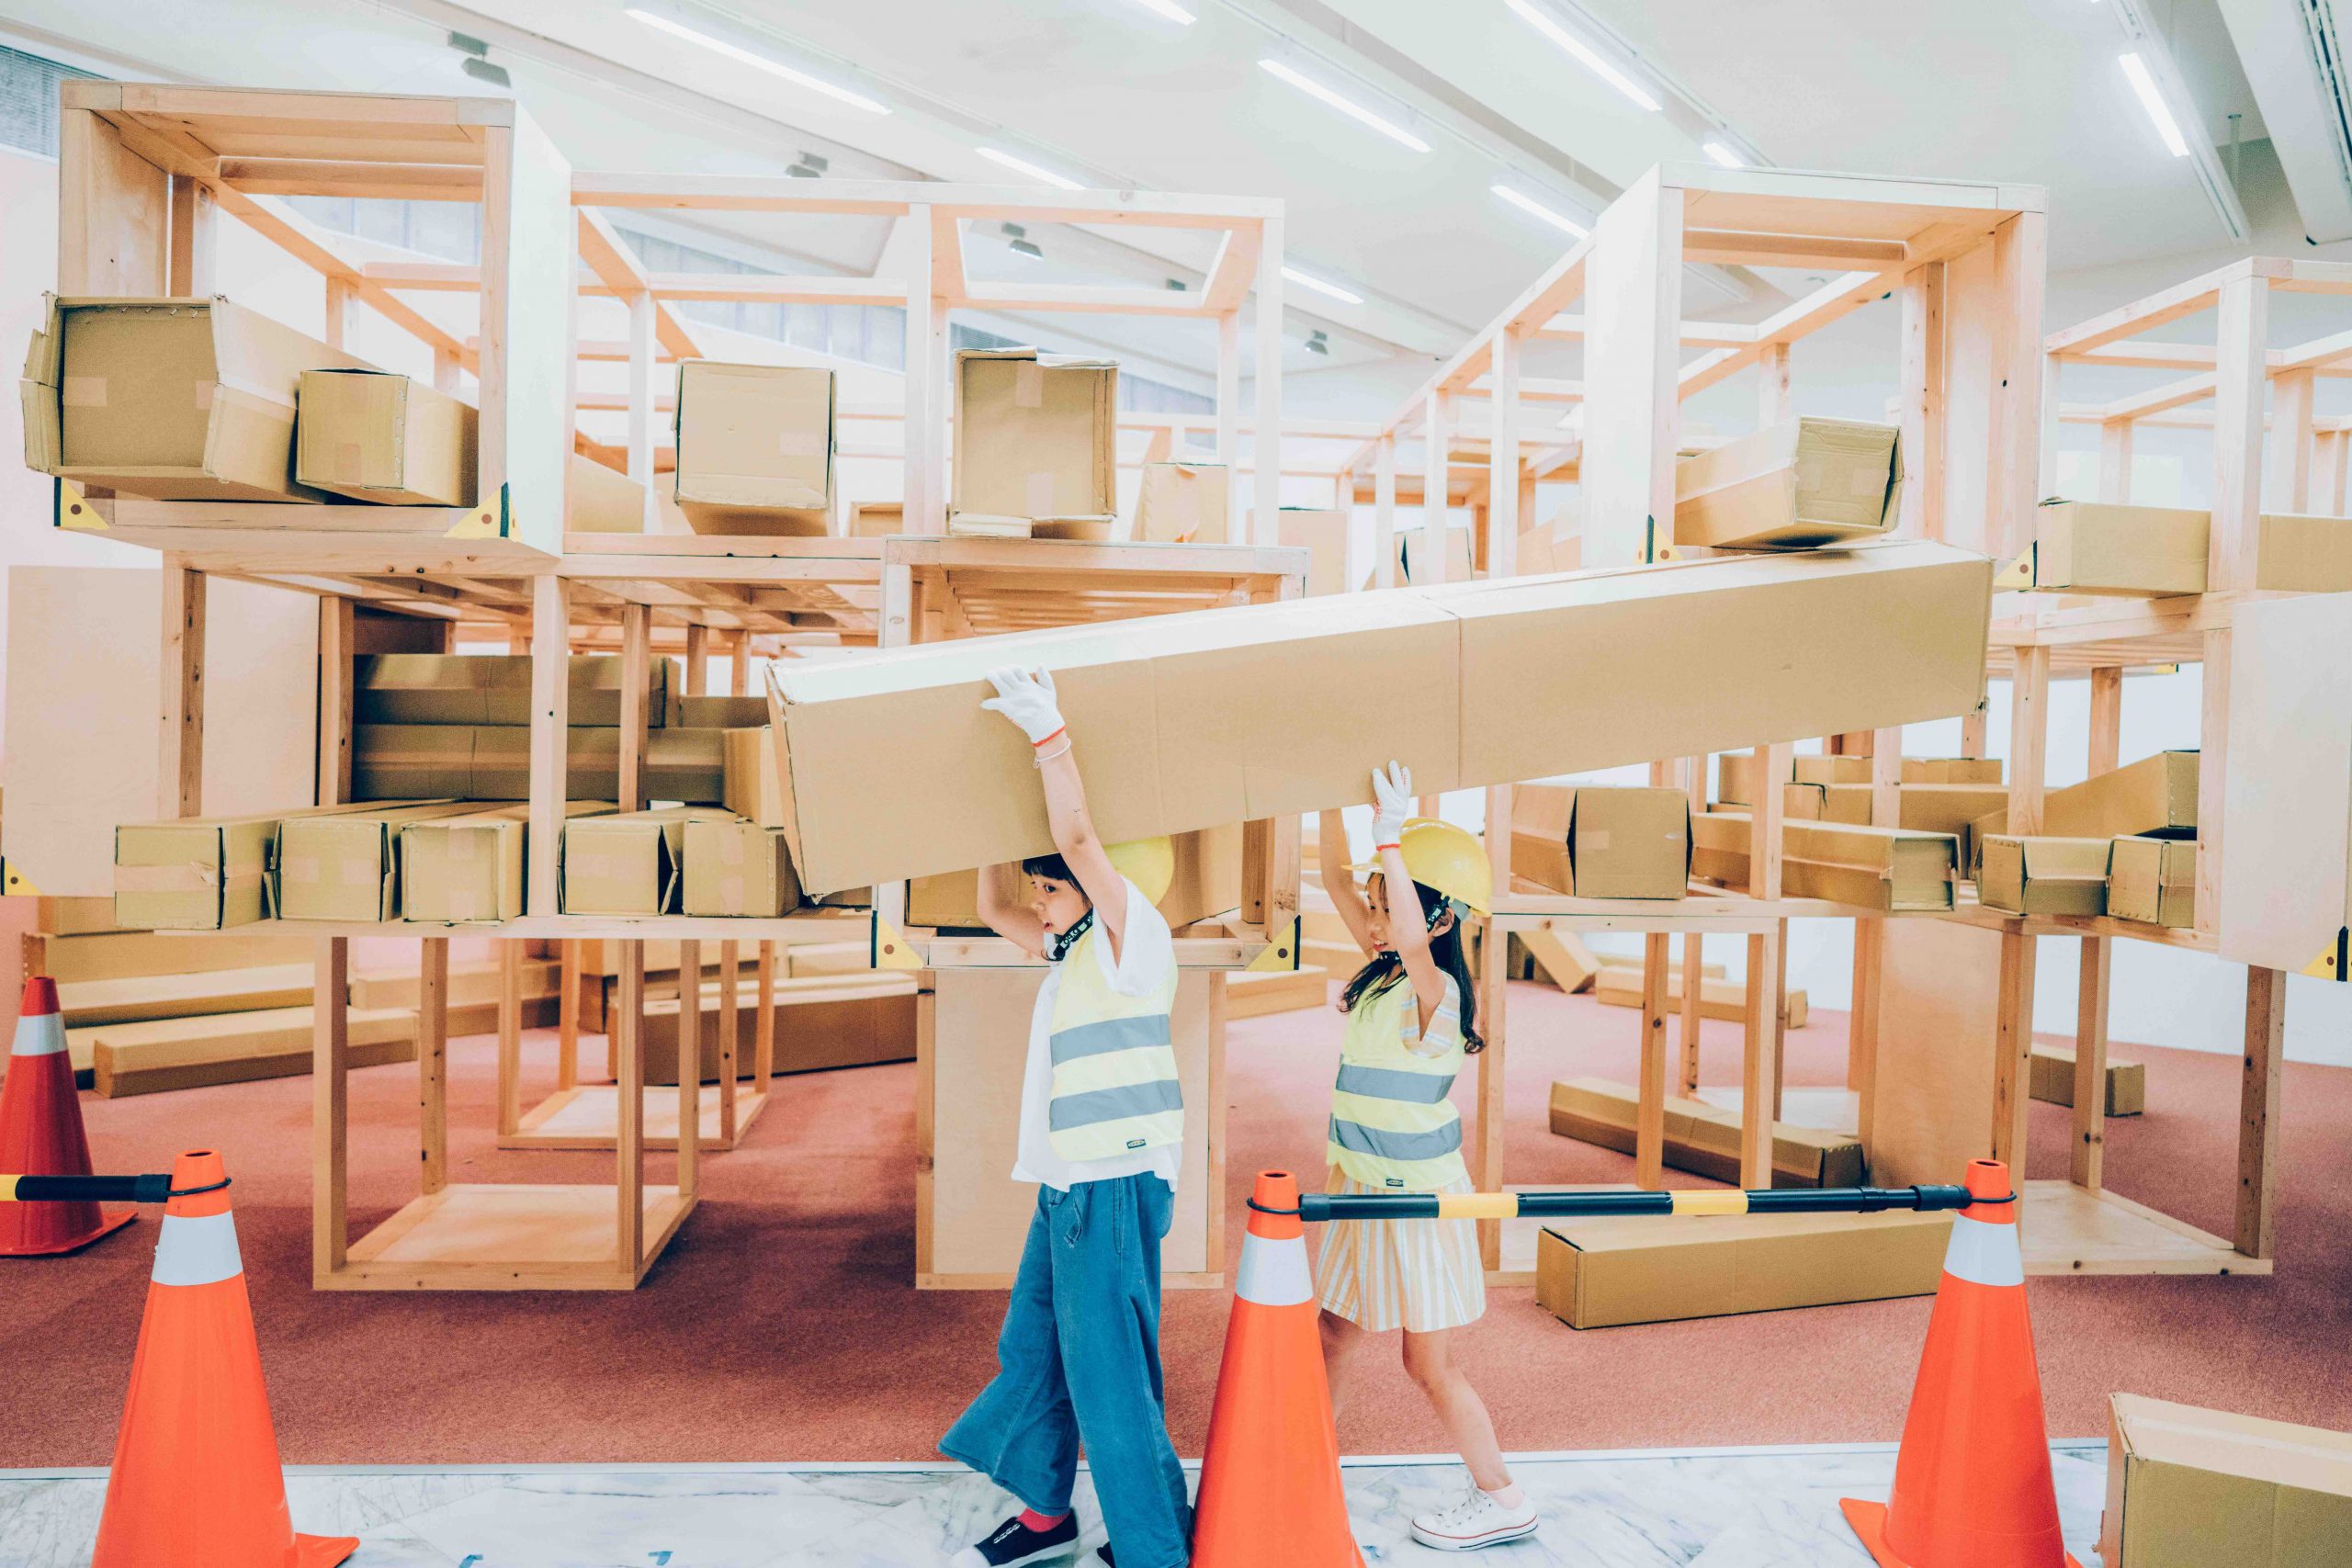 臺北市立美術館兒童教育藝術中心「建築的70_」中兩名孩童戴著安全帽在搬運大紙箱